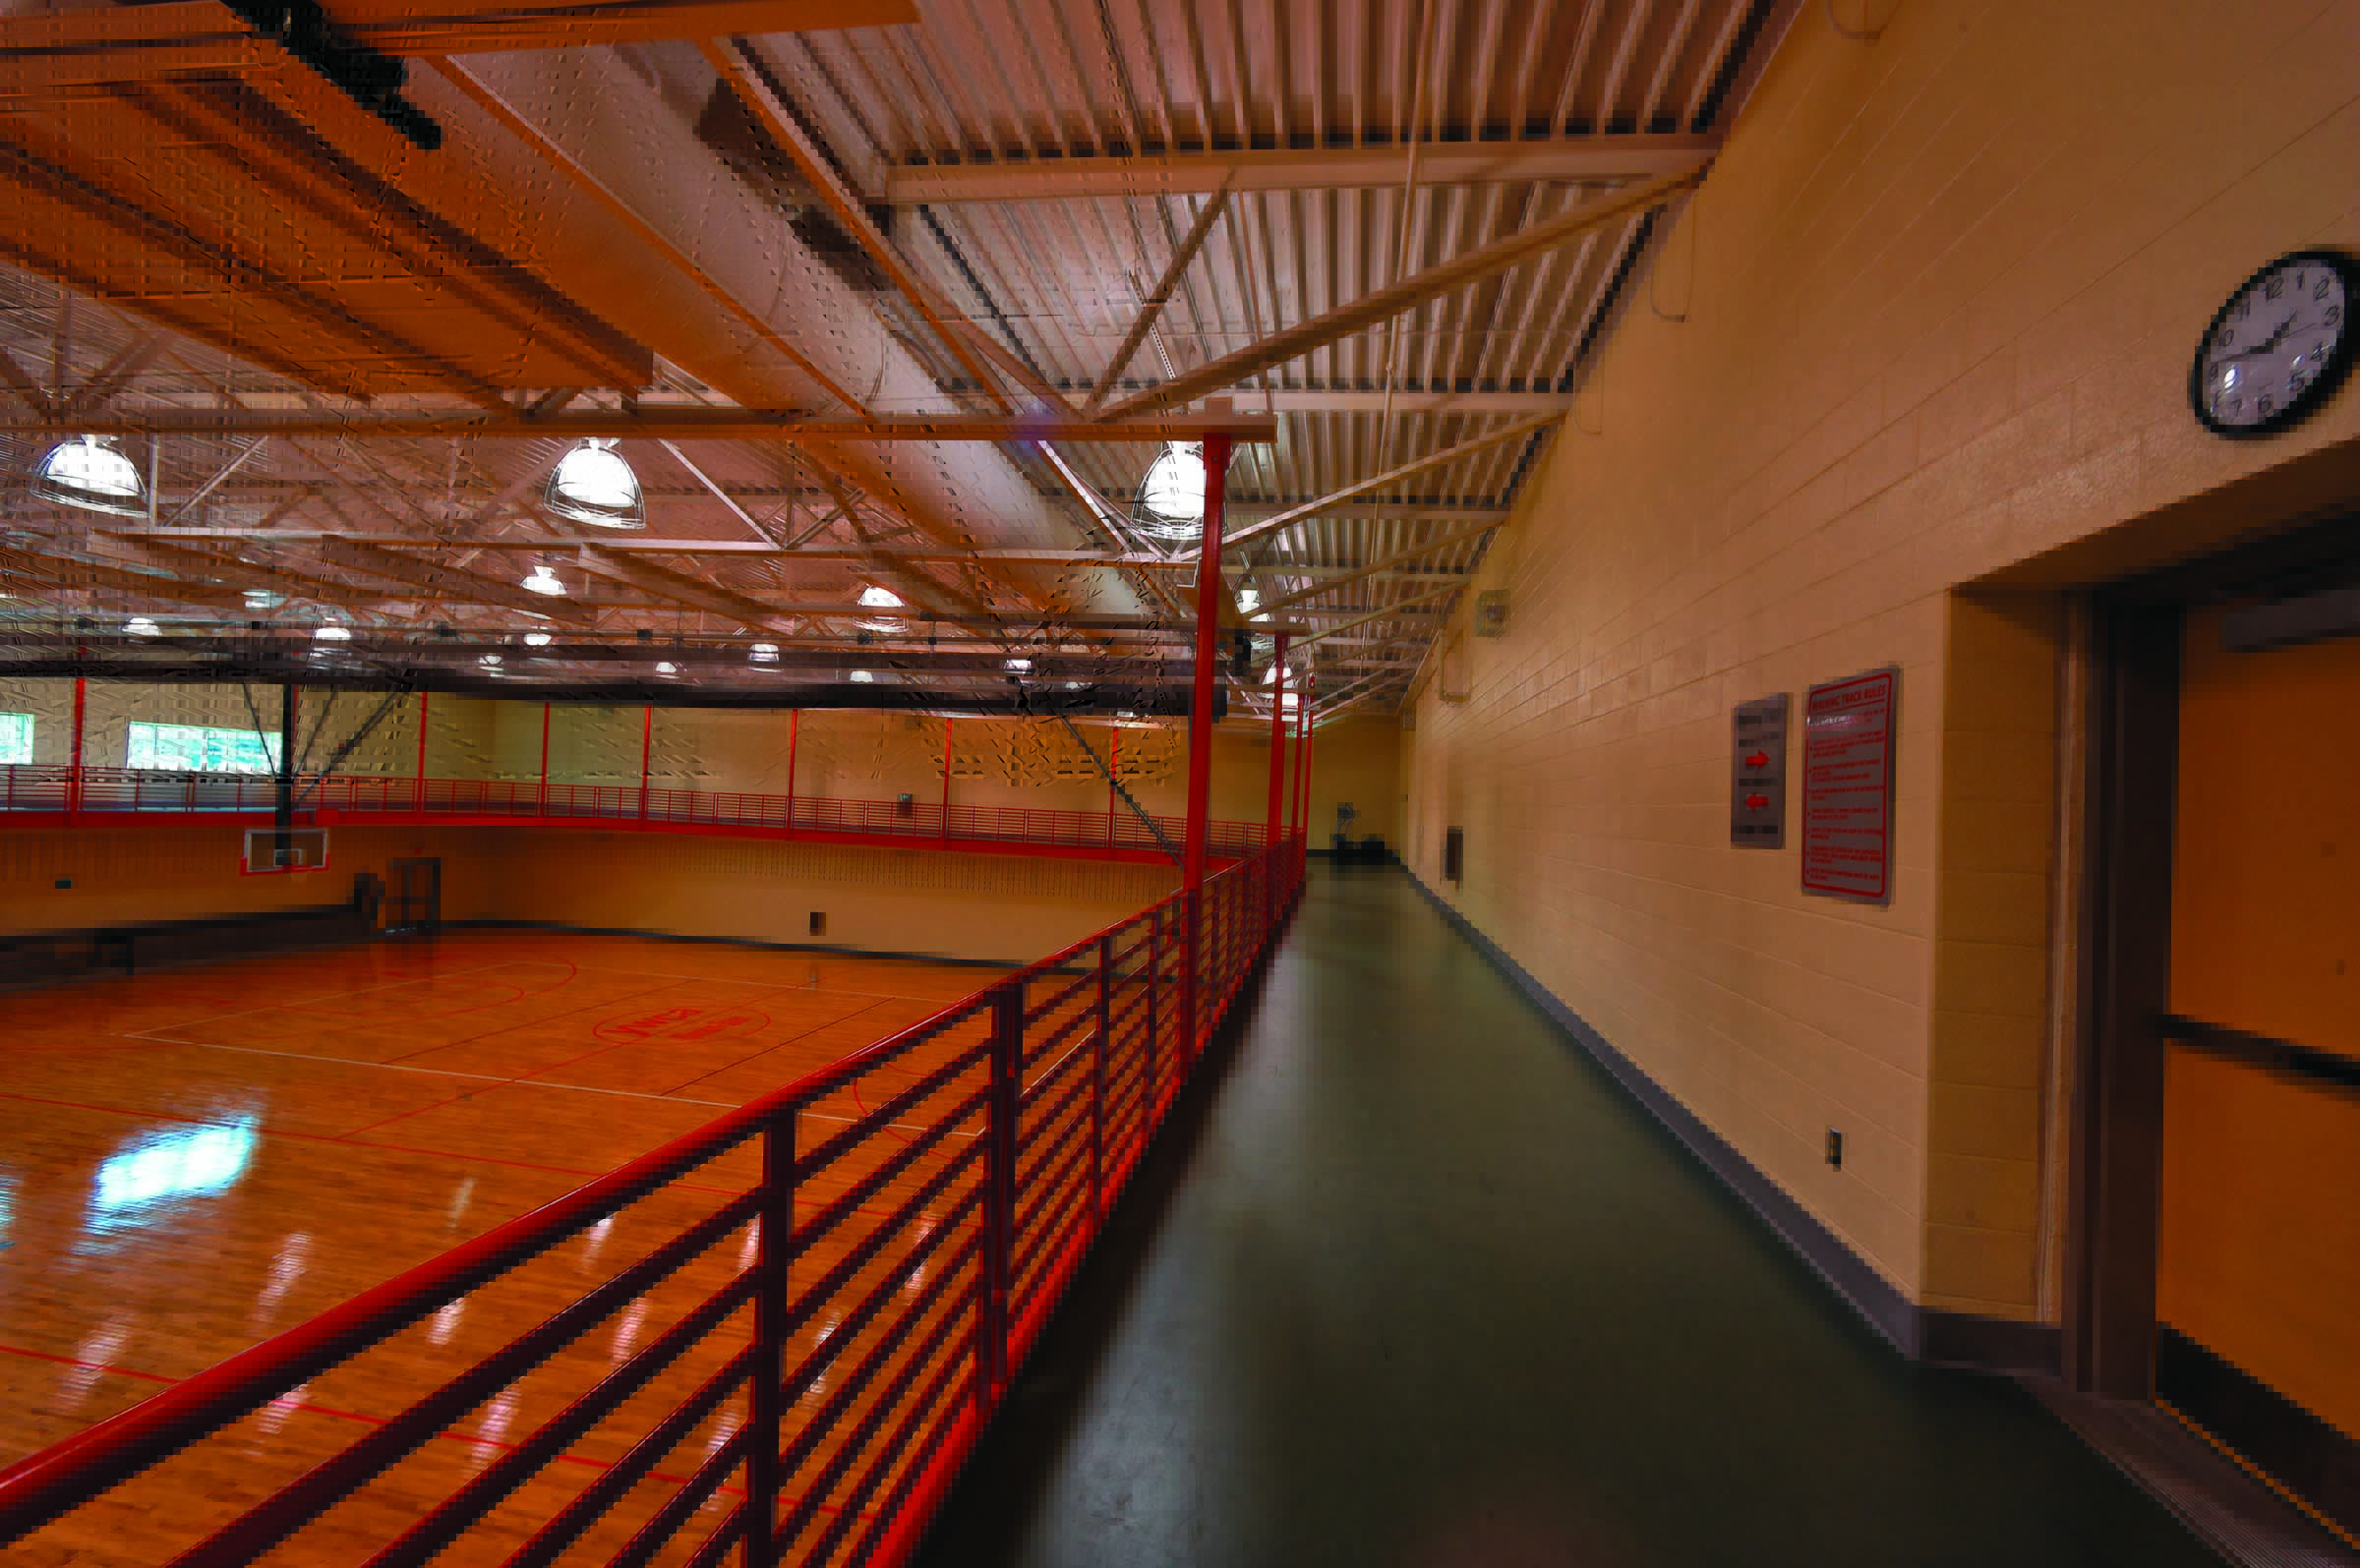 YWCA Gateway Sports & Wellness Center photo 3 of 6